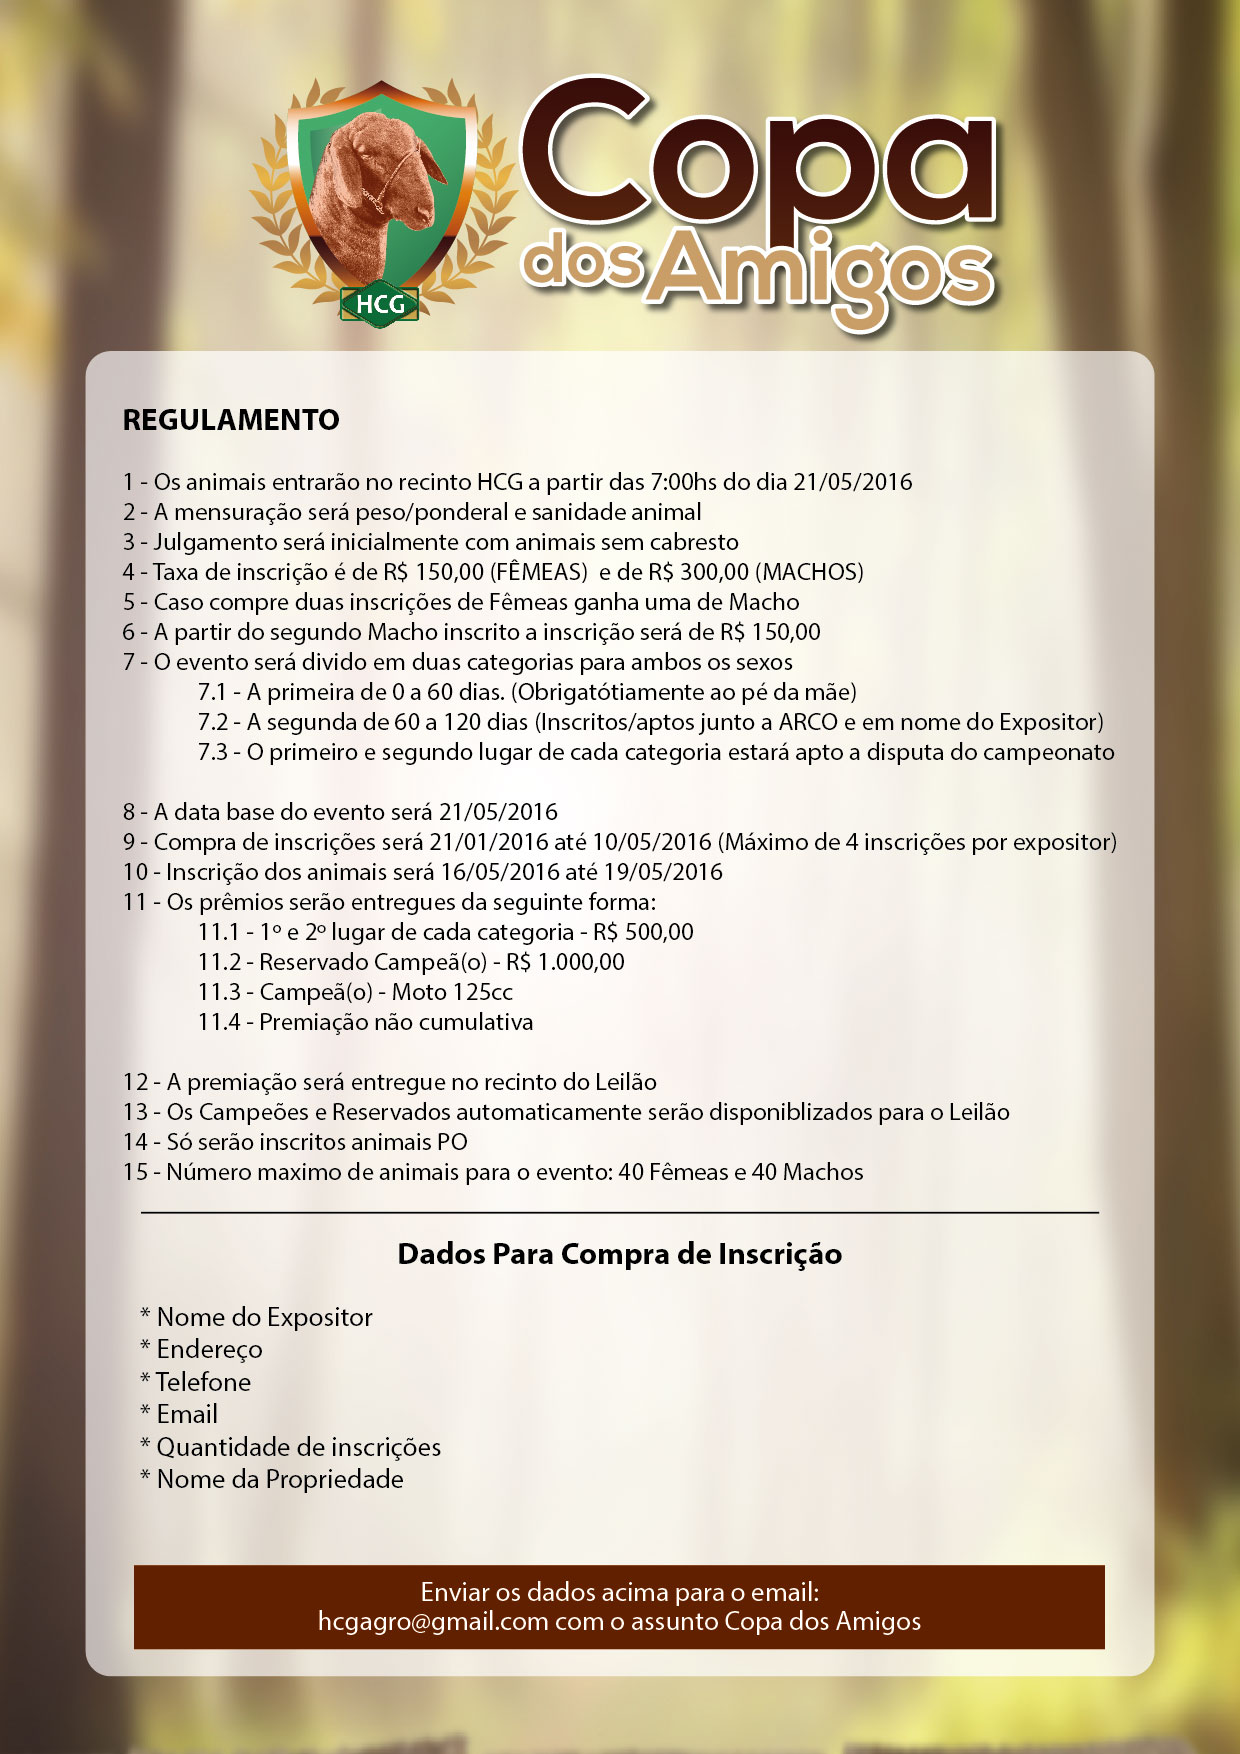 REGULAMENTO_COPA_DOS_AMIGOS-01